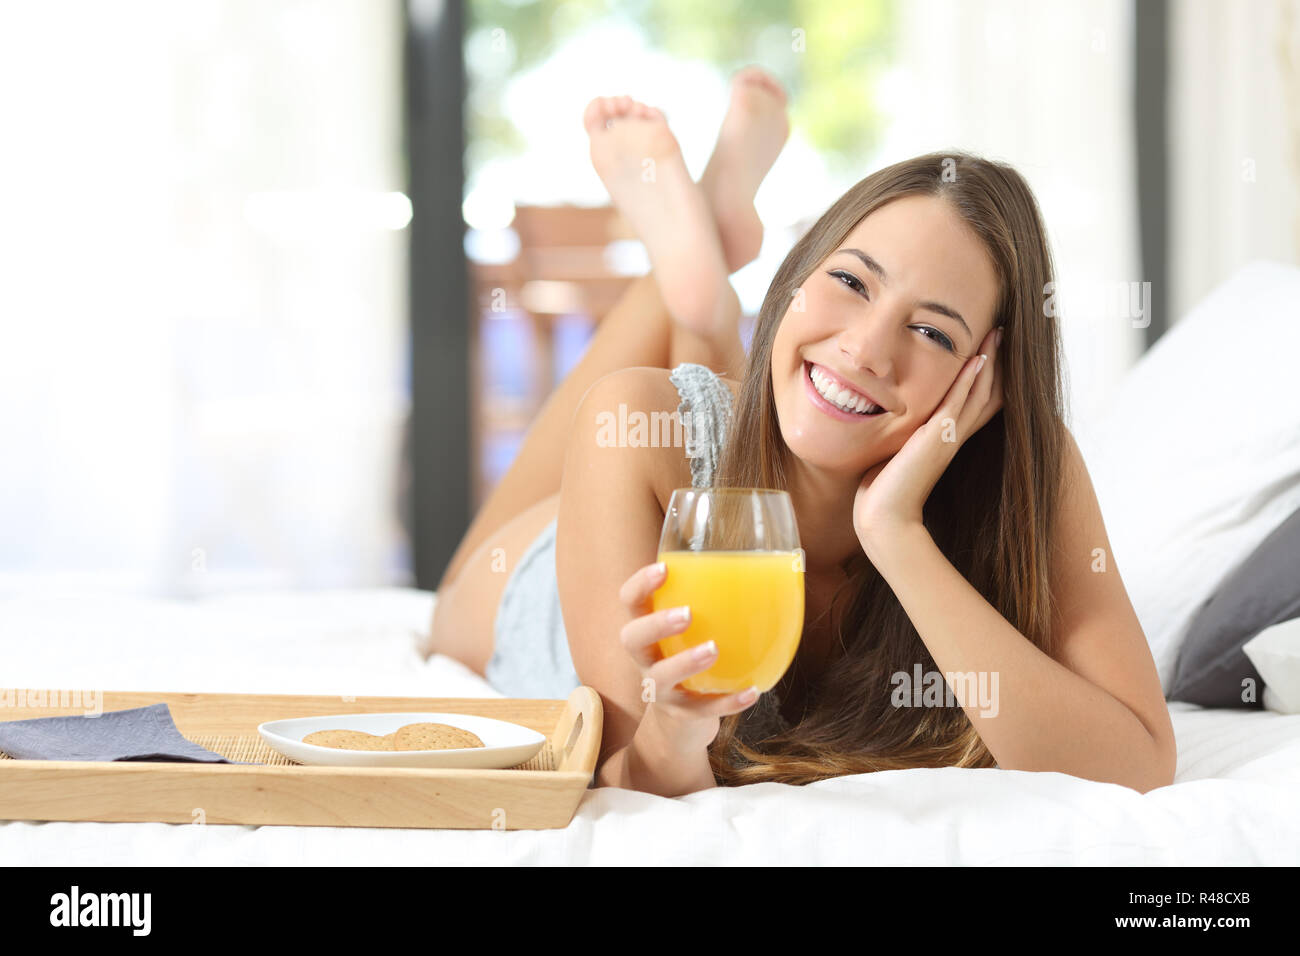 Happy girl le petit-déjeuner avec jus d'orange Banque D'Images